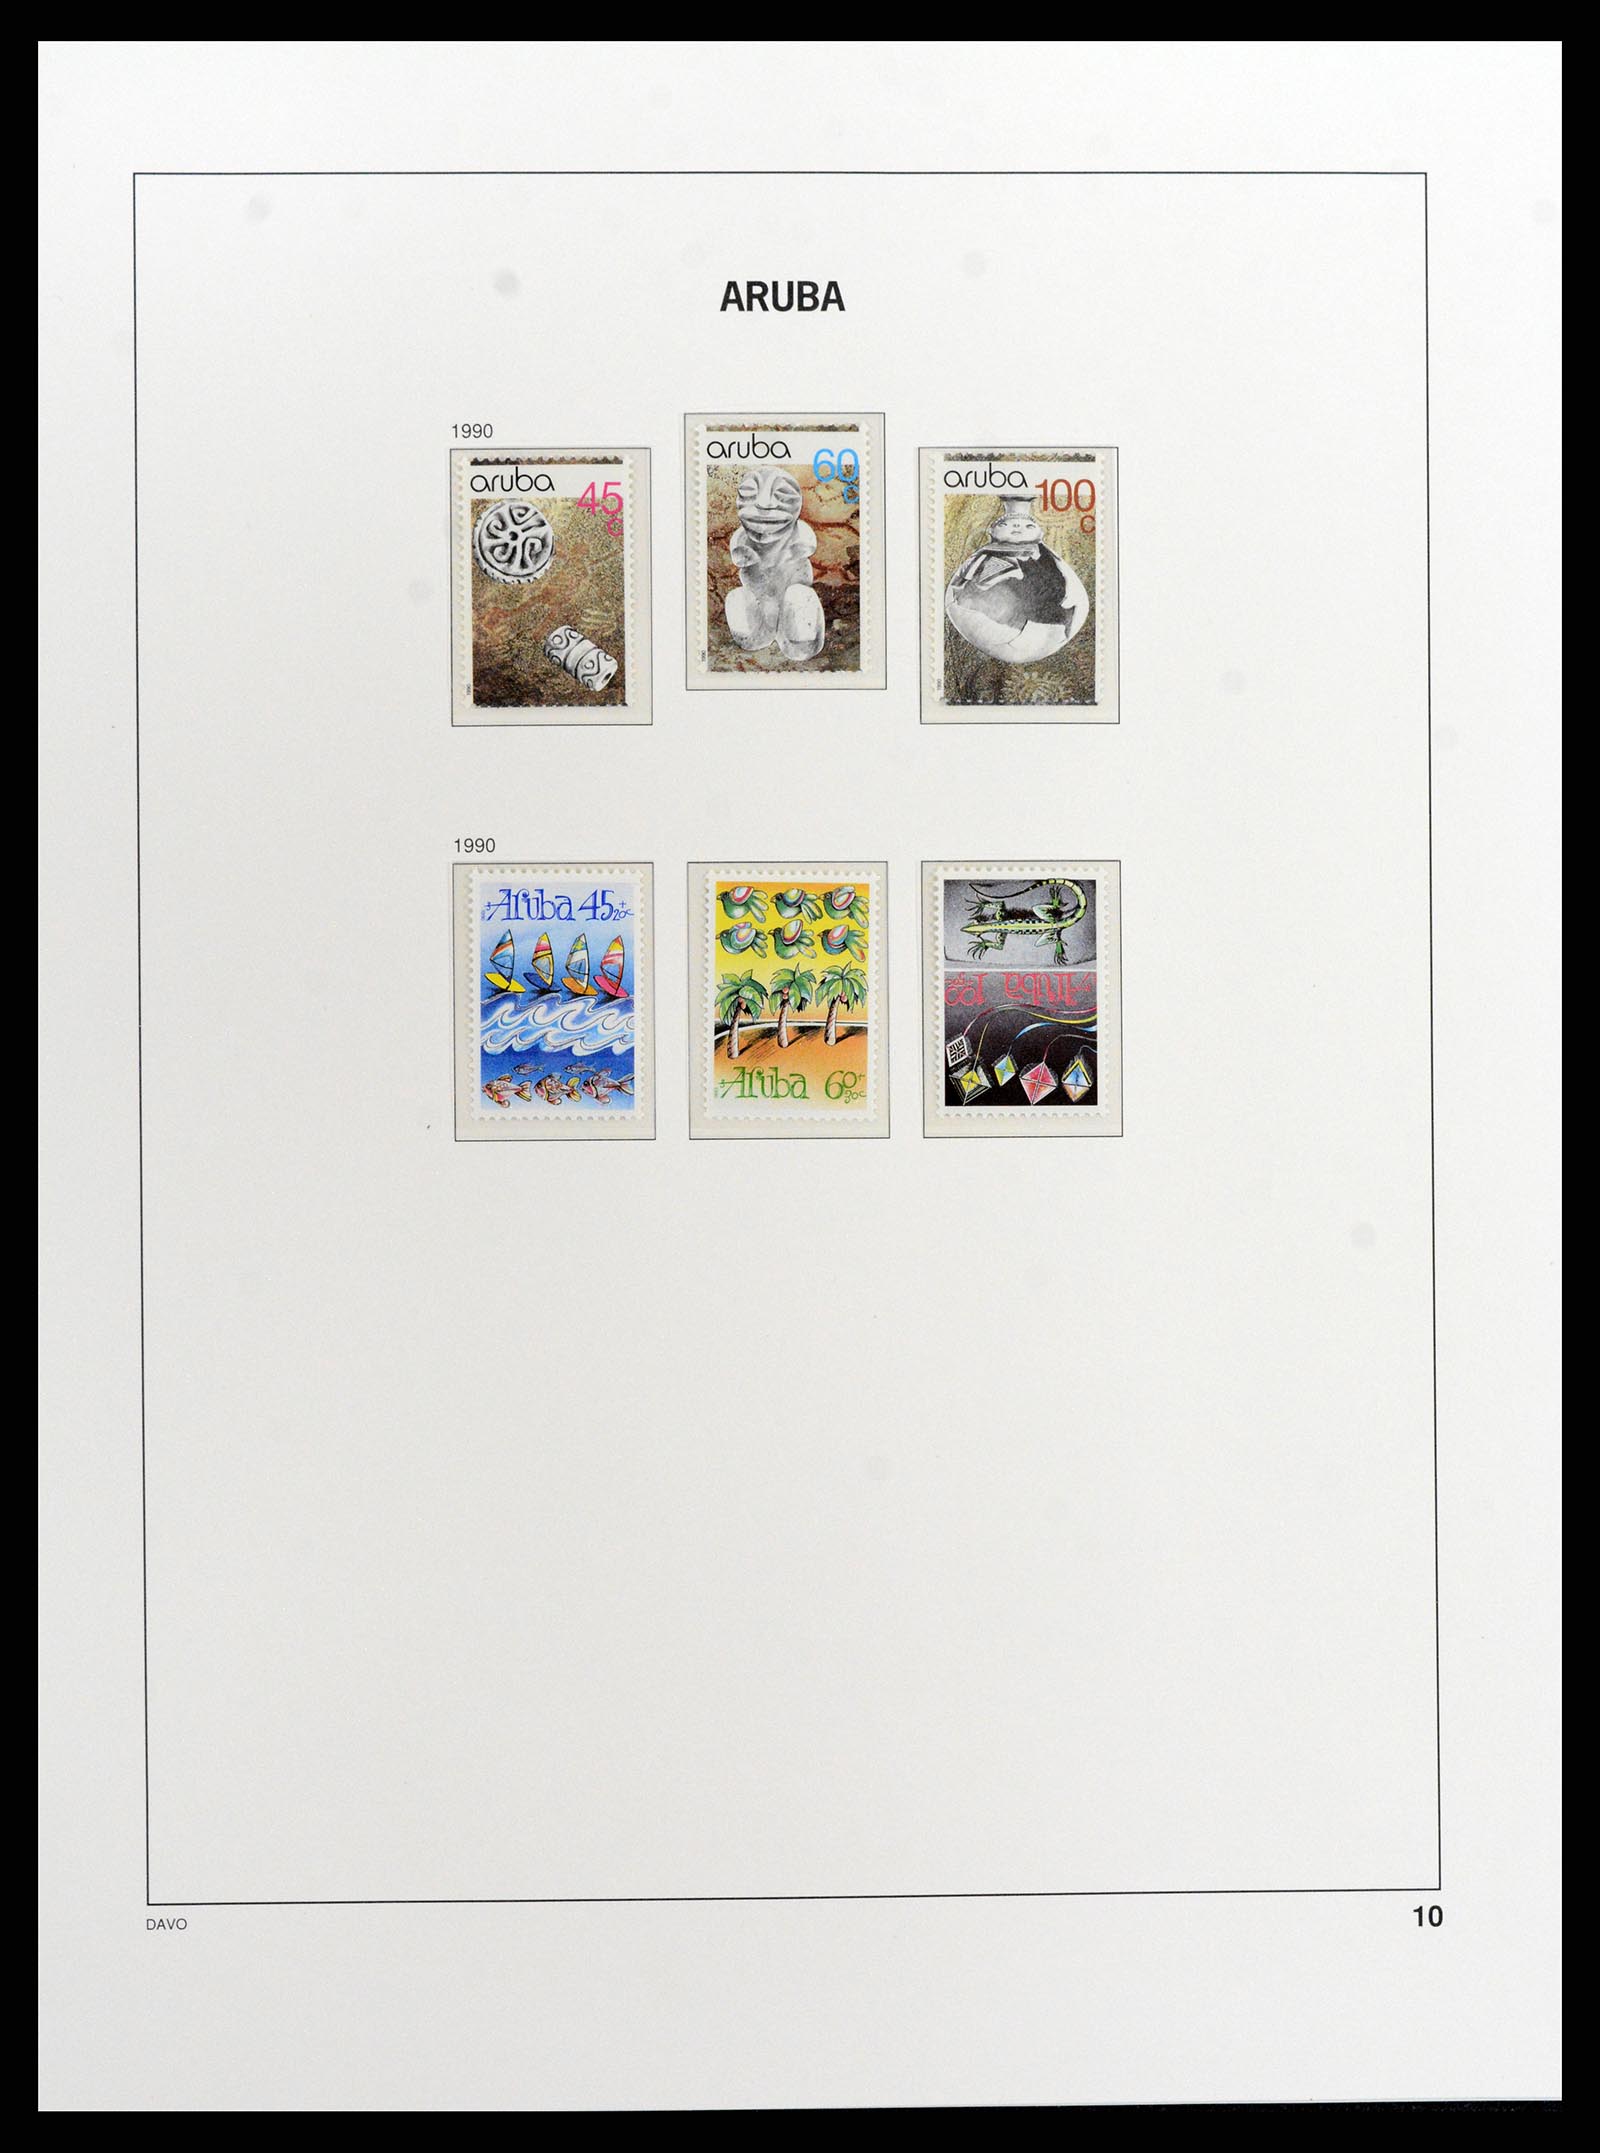 37841 010 - Stamp Collection 37841 Aruba 1986-2011.